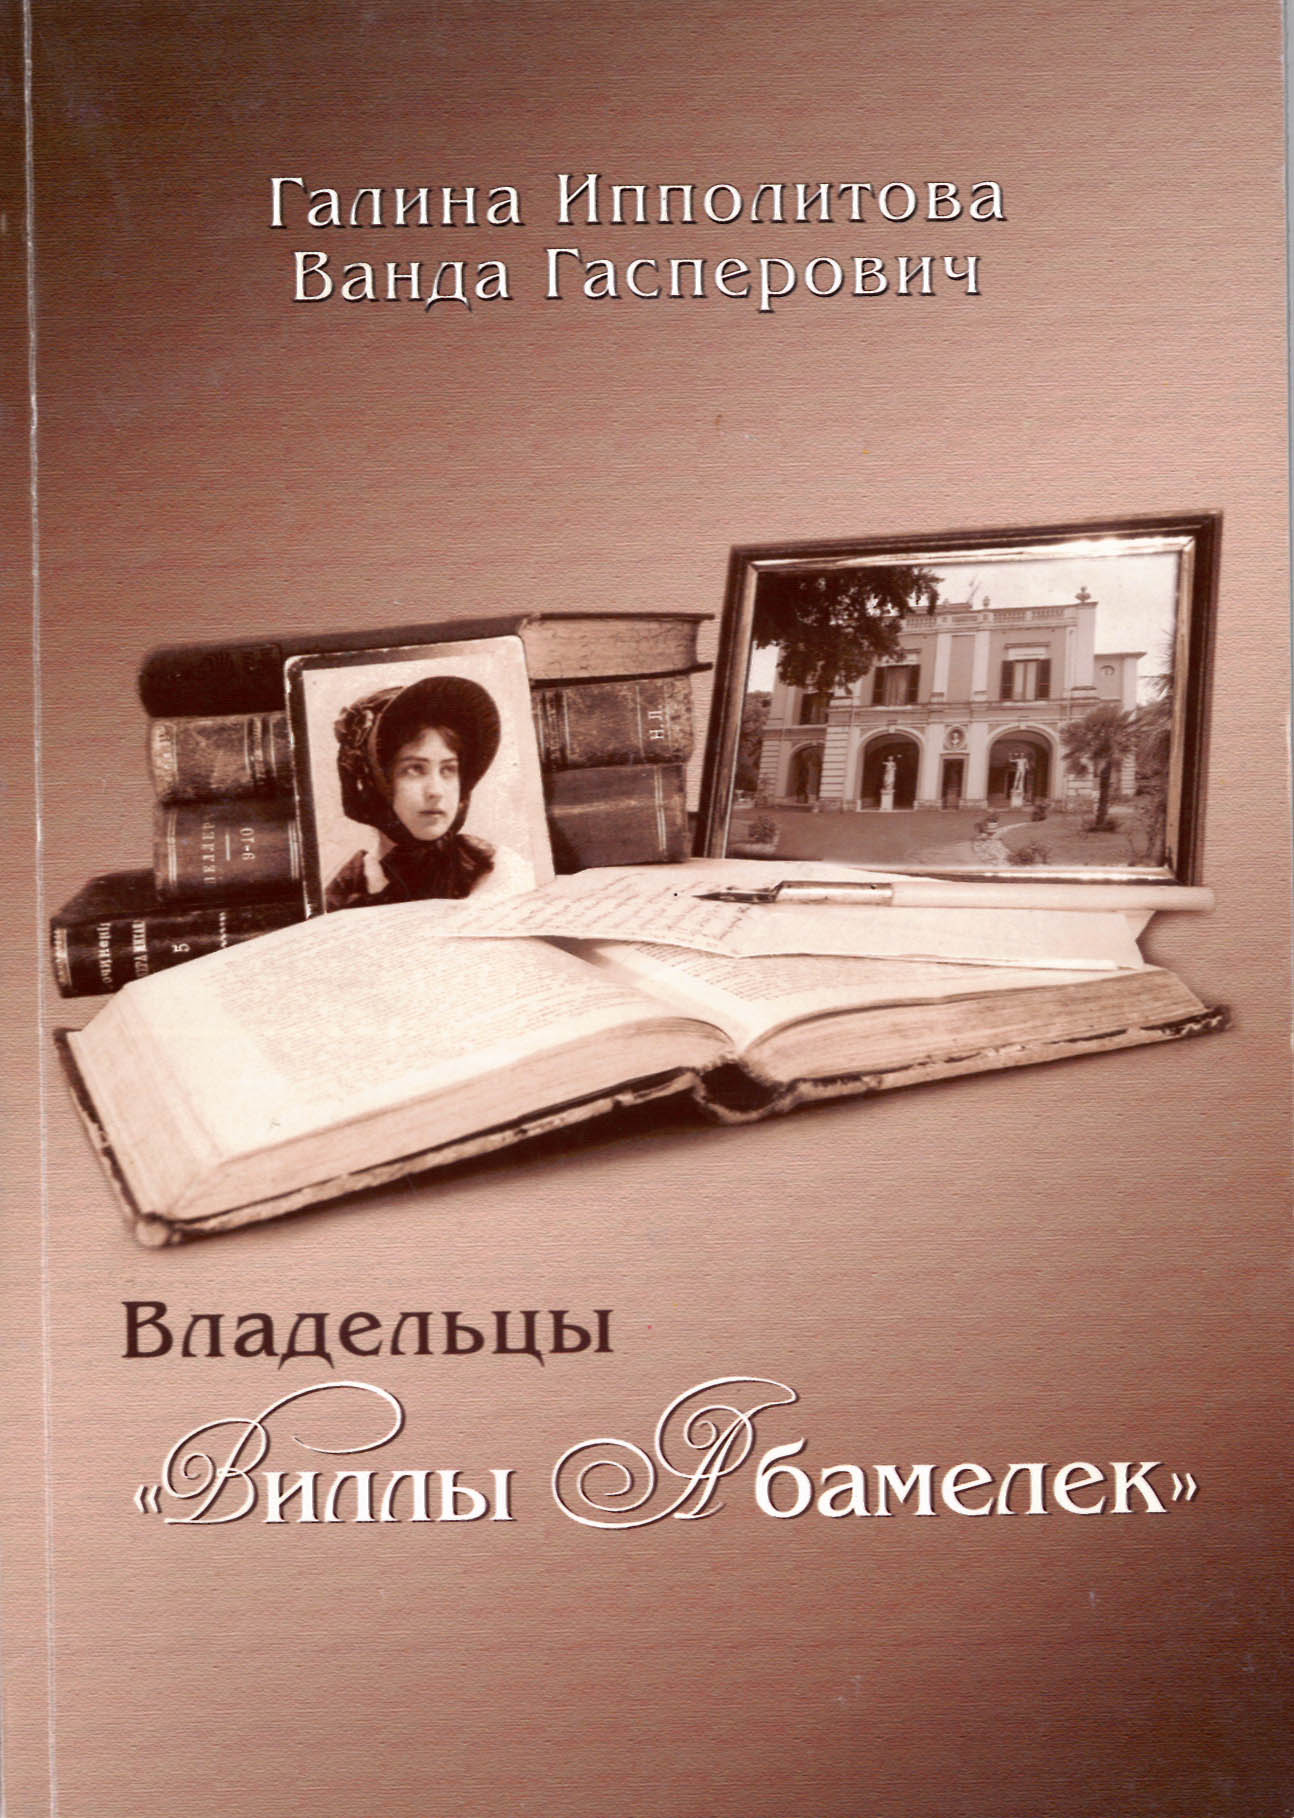 обложка книги "Владельцы "Виллы Абамелек"